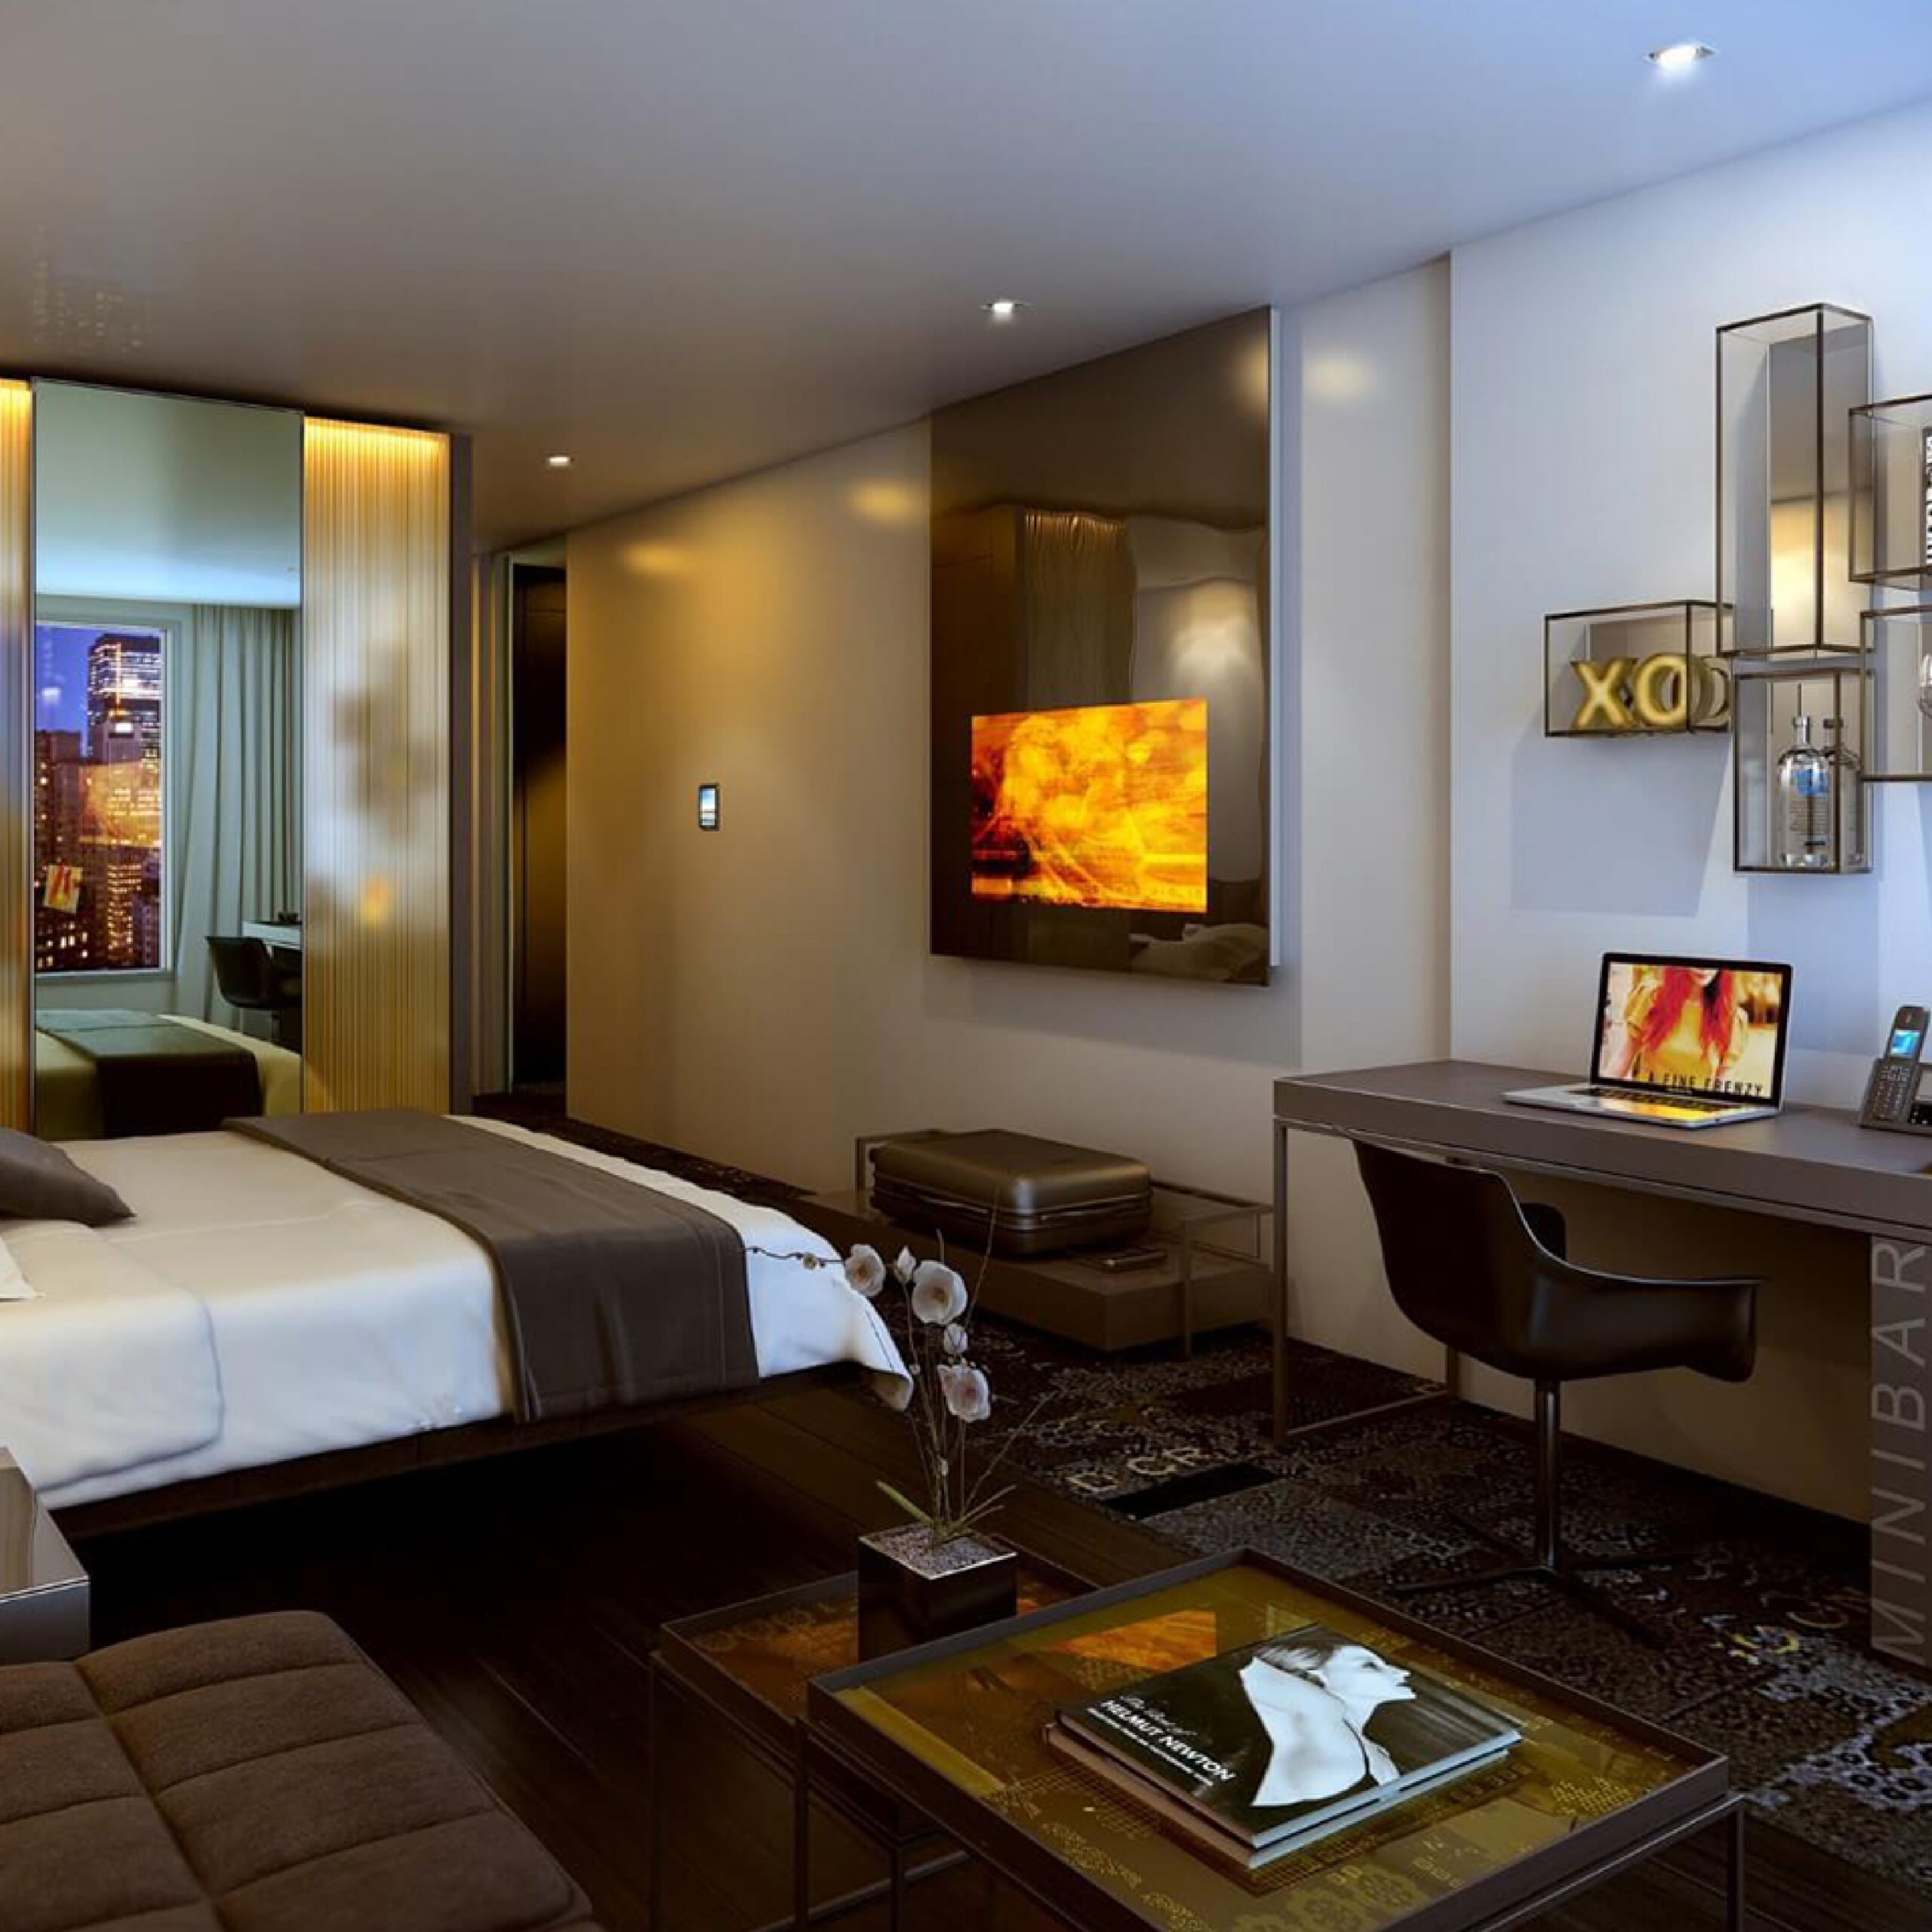 hotel bedroom